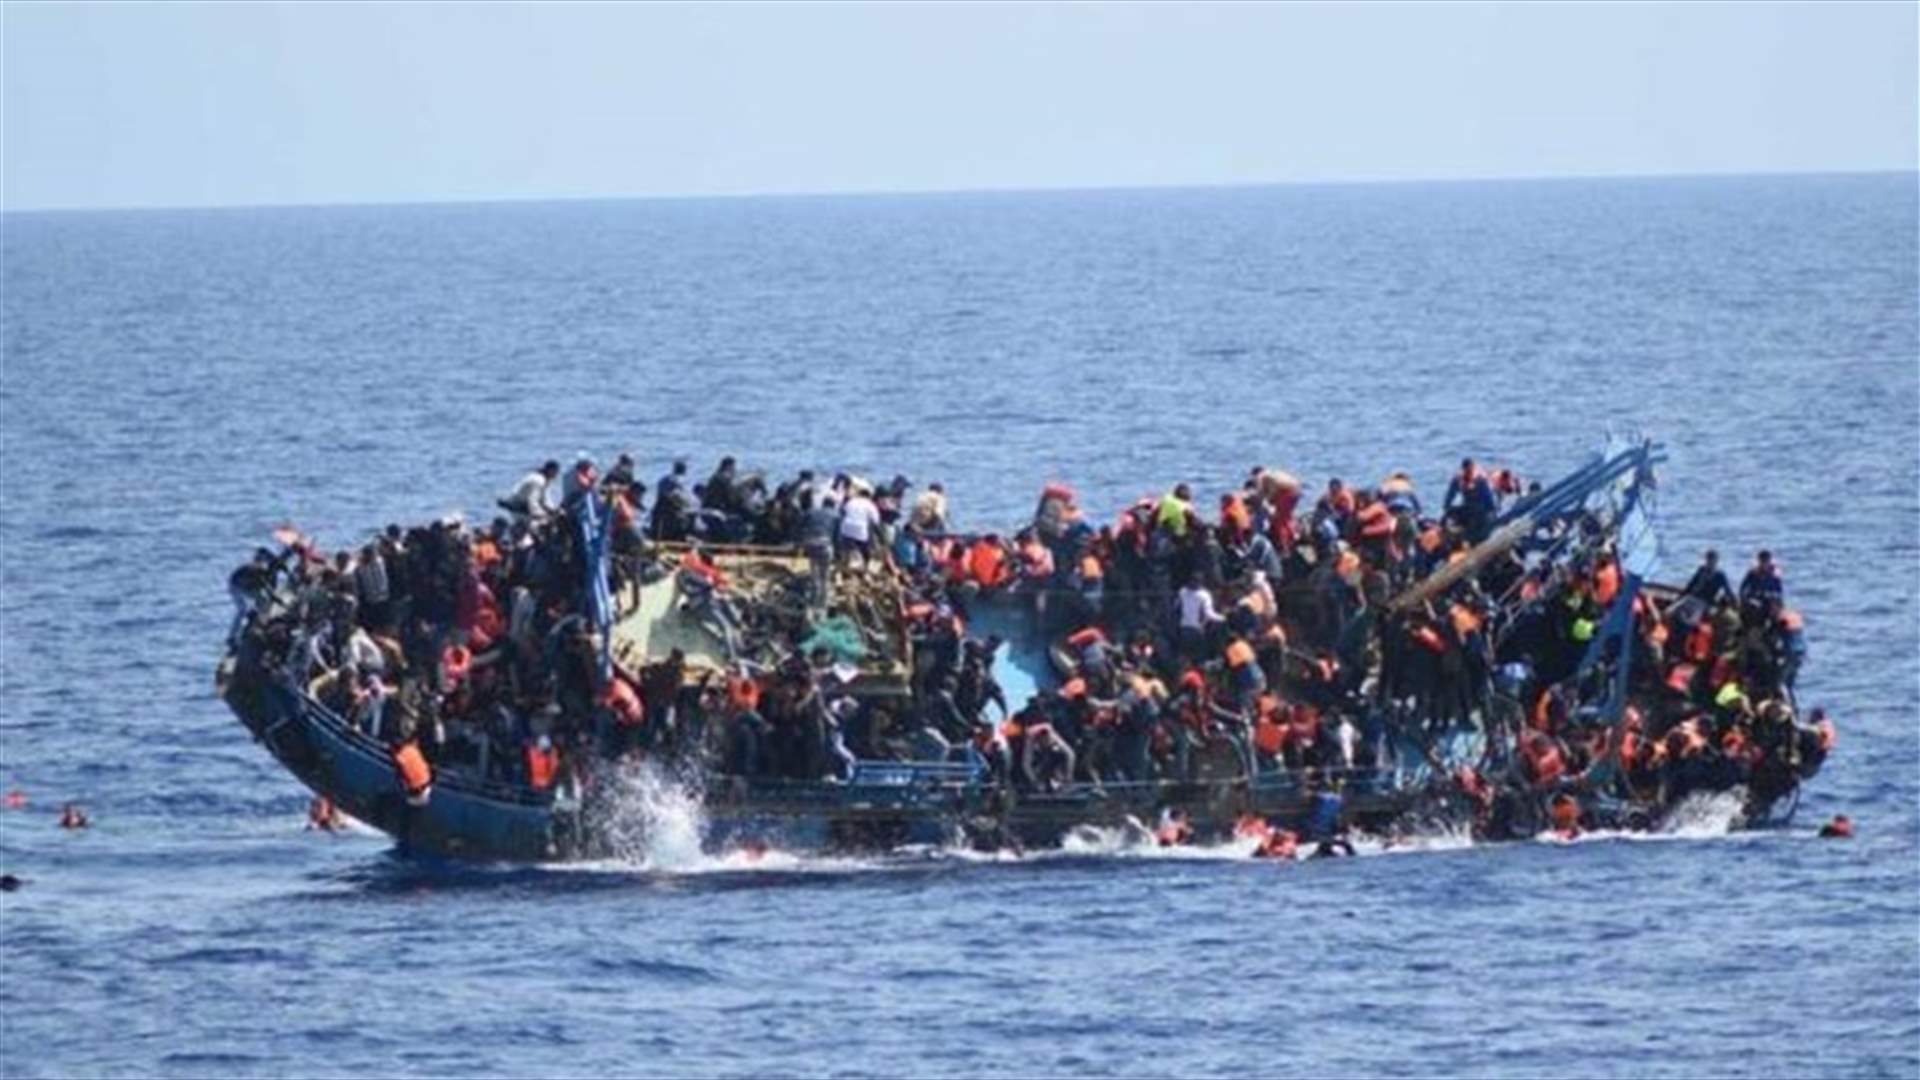 اكثر من 3 آلاف مهاجر غرقوا في البحر المتوسط منذ كانون الثاني